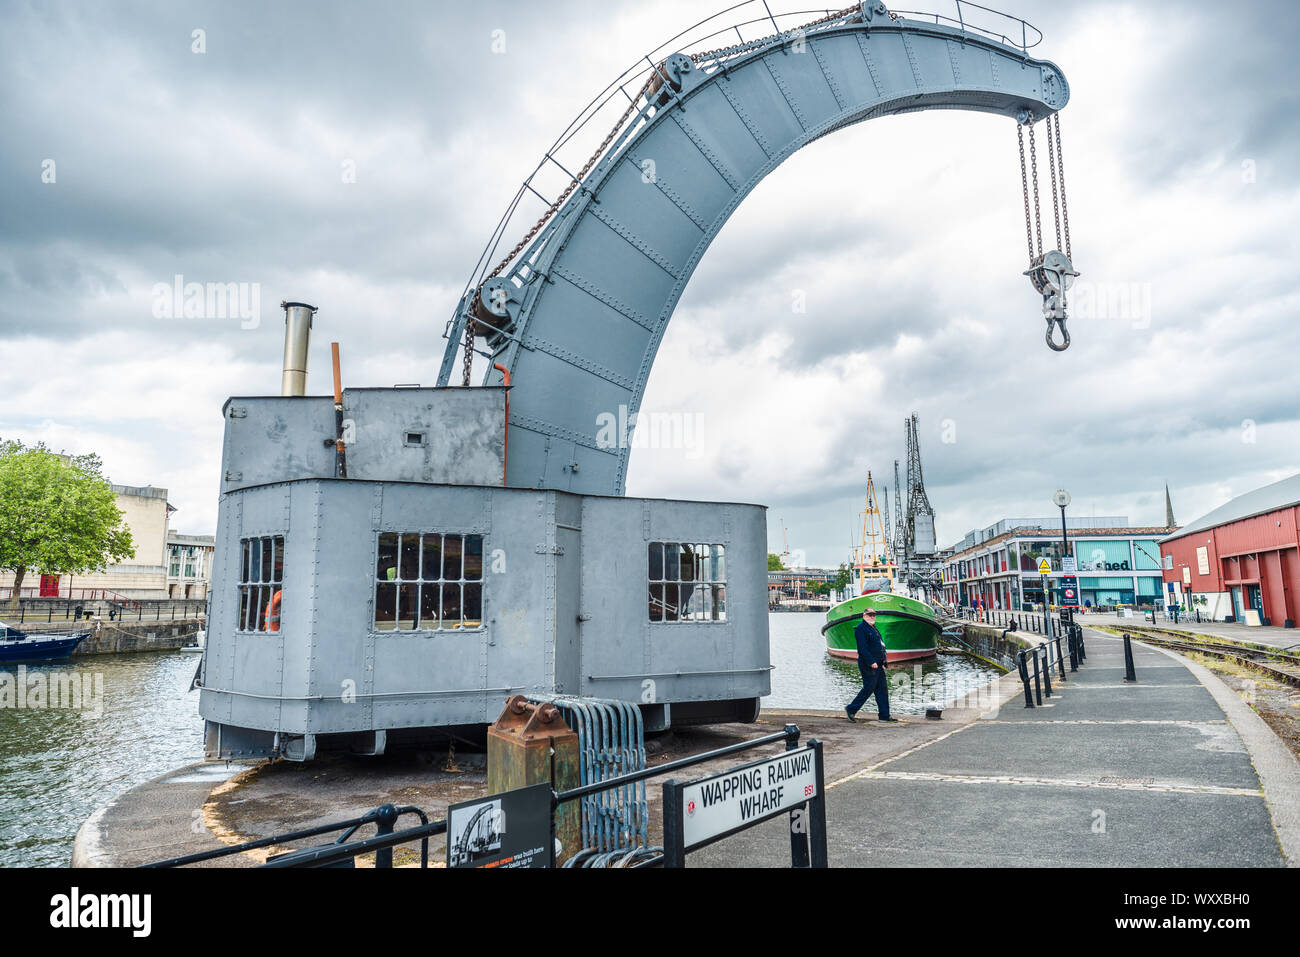 Historique La vapeur Fairbairn grue dans l'article port flottant de Bristol Docks, Avon, England, UK. Banque D'Images